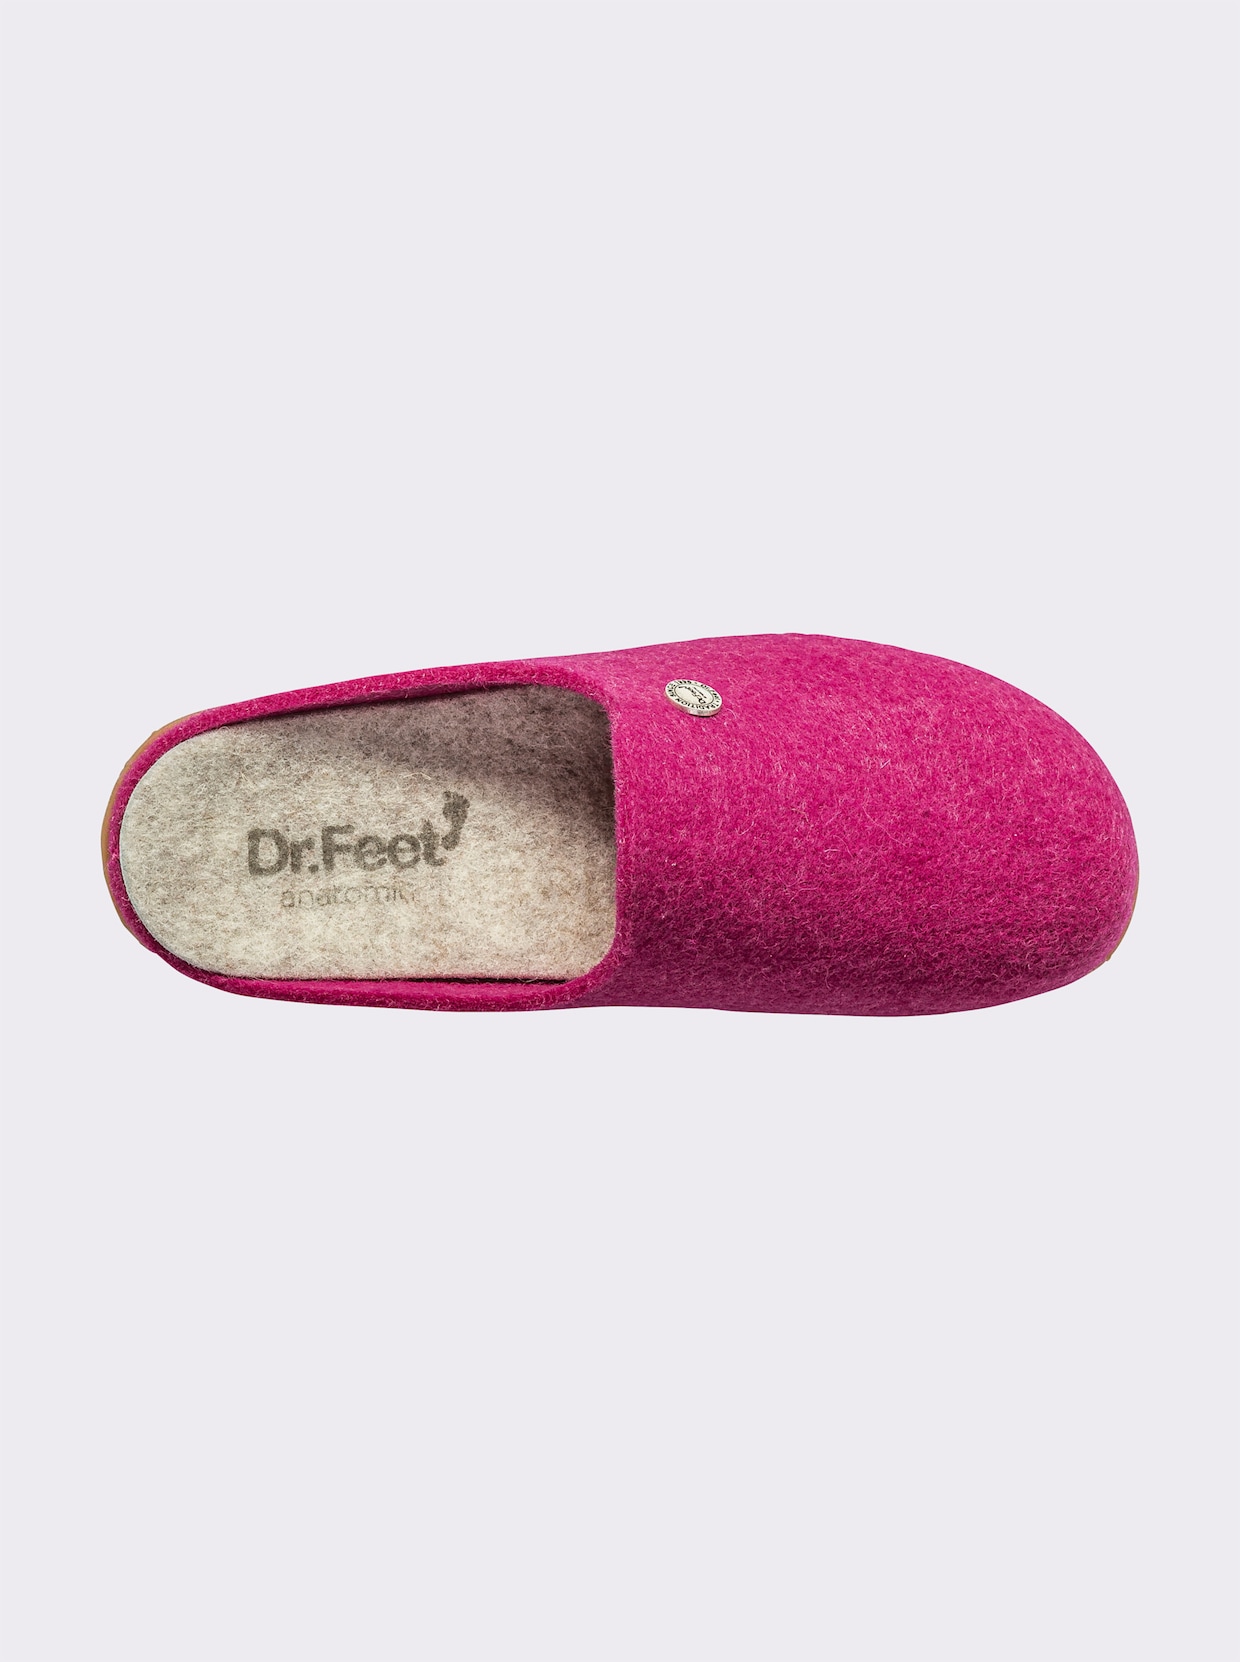 Dr. Feet Pantolette - pink